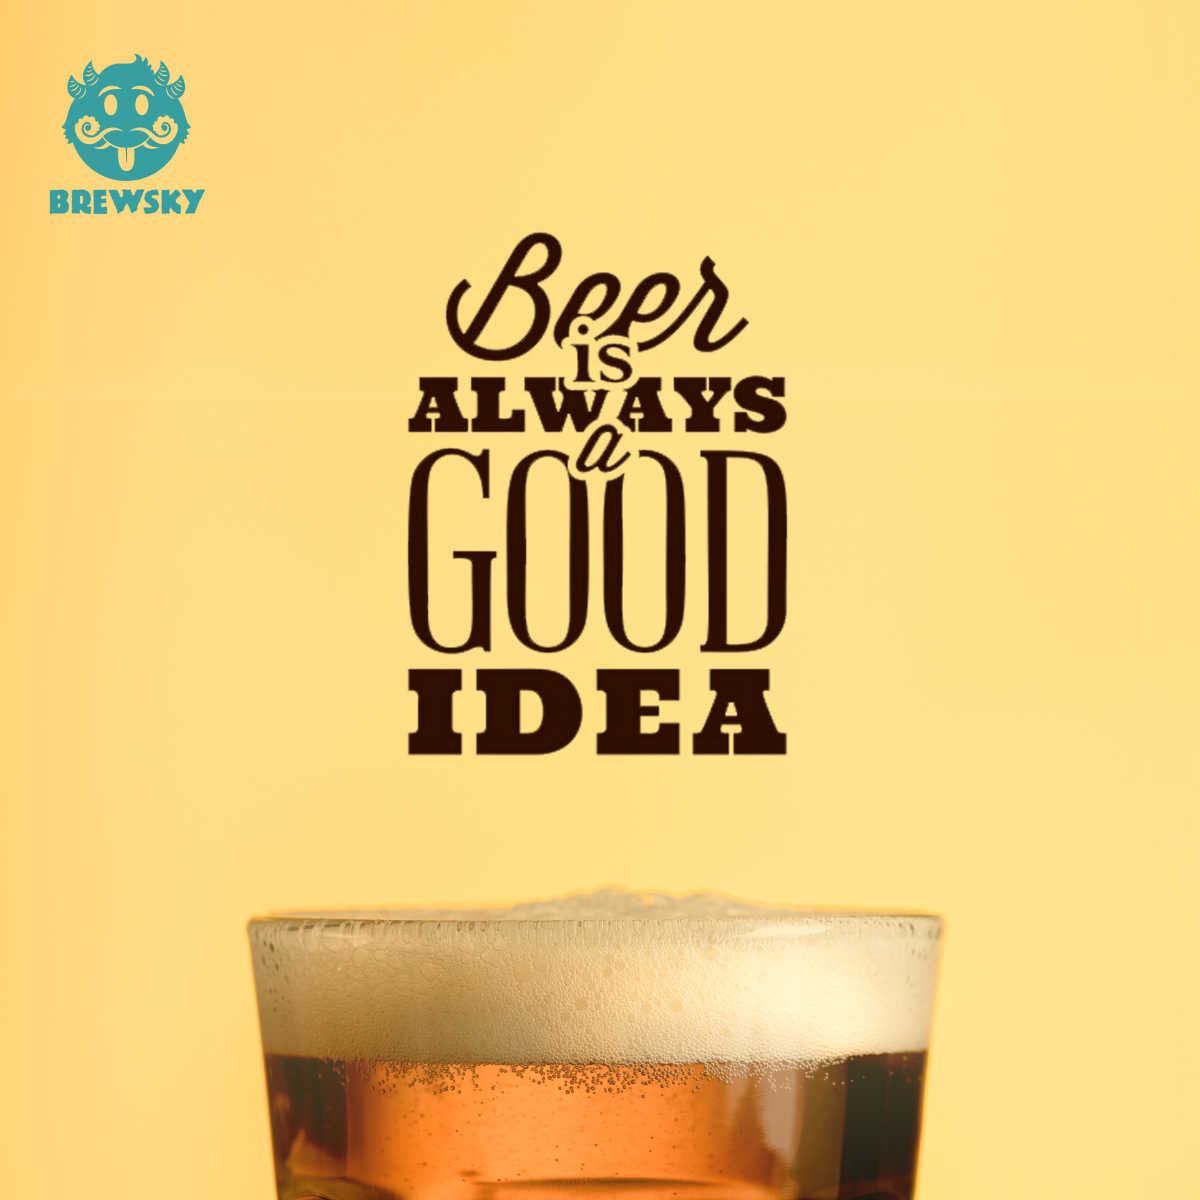 Brewsky Beer Highlight ideas